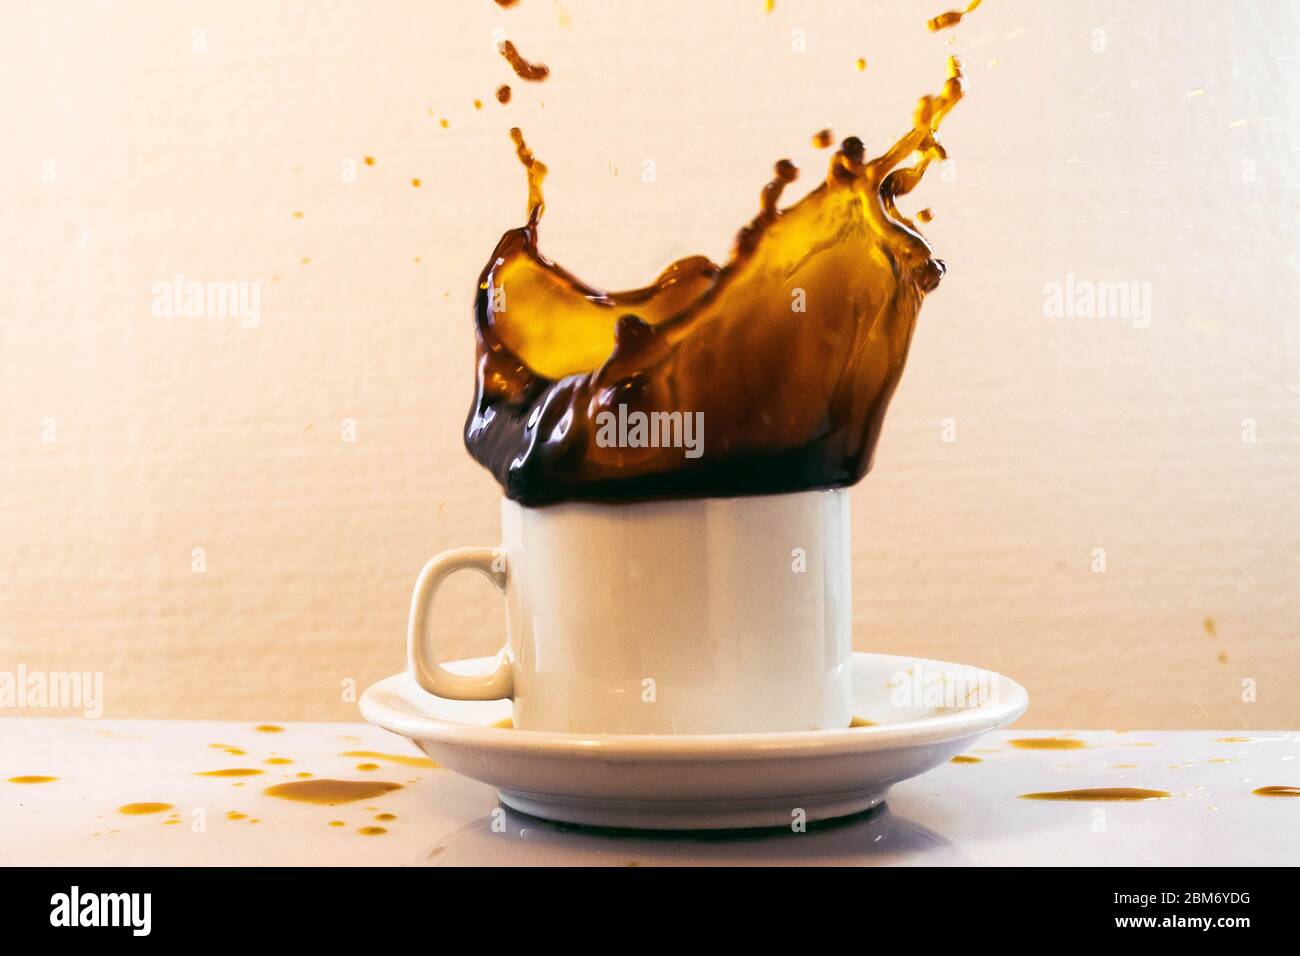 splash de cafe con fondo blanco Stock Photo